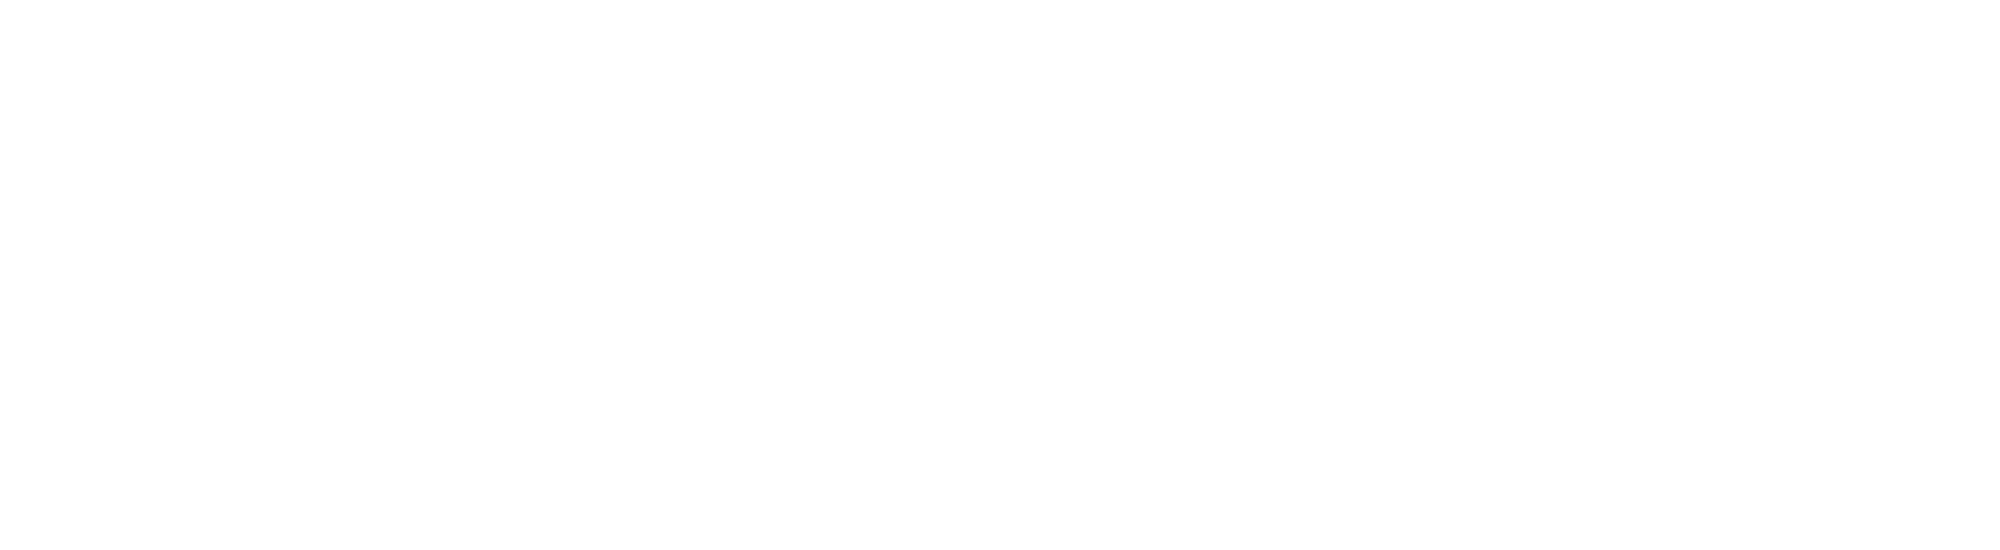 F. WIENER GmbH